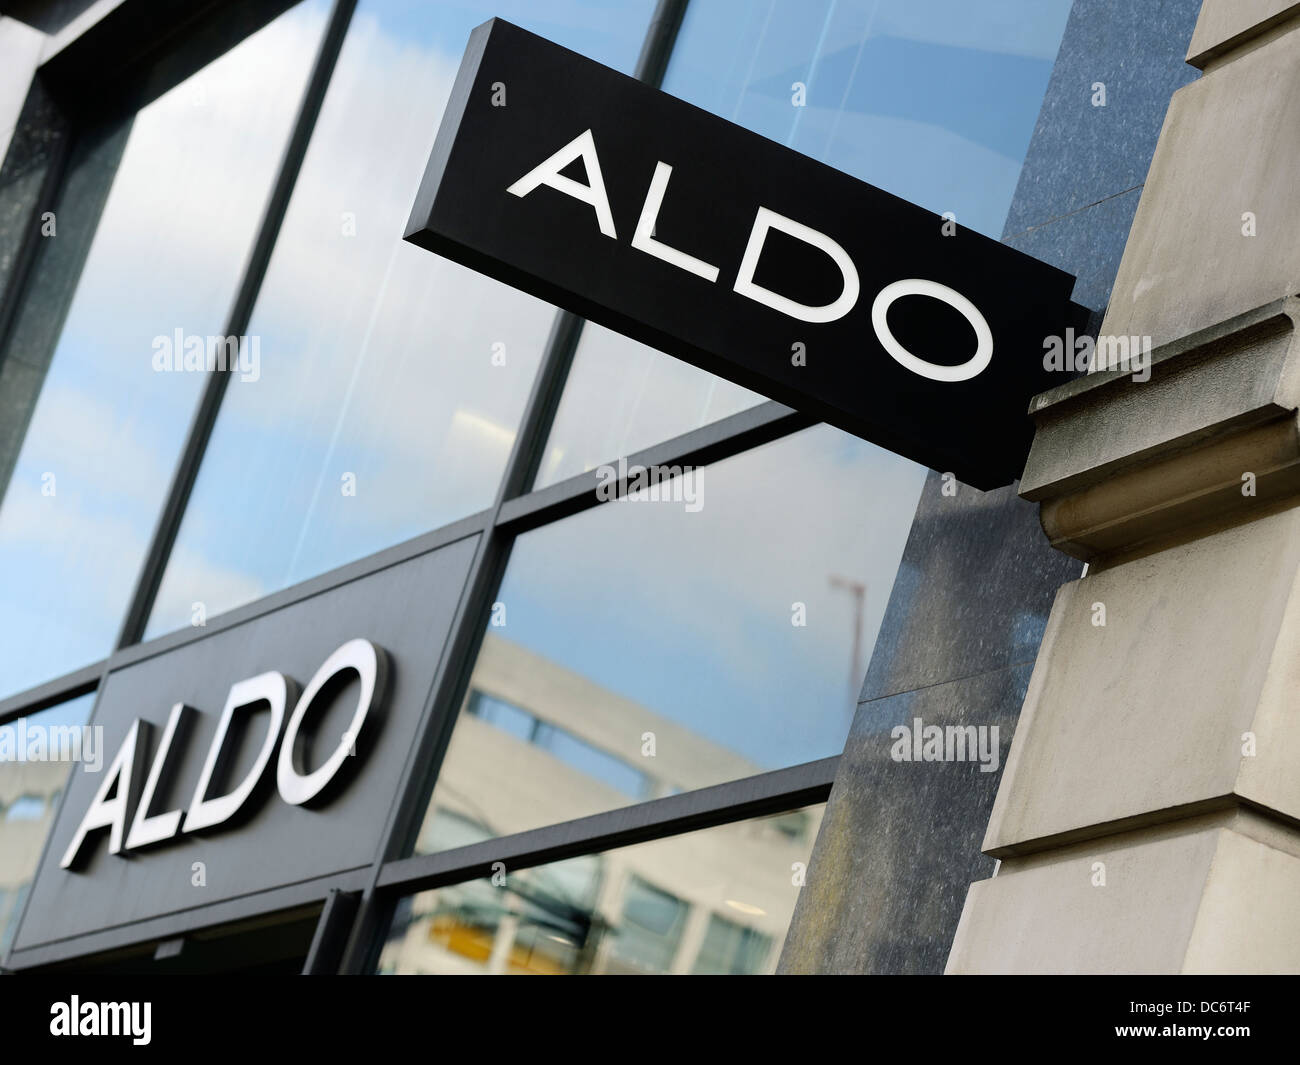 Cartel De Aldo Shop, Oxford Street, Londres, Reino Unido. London Branch del minorista mundial de calzado de propiedad canadiense. Foto de stock